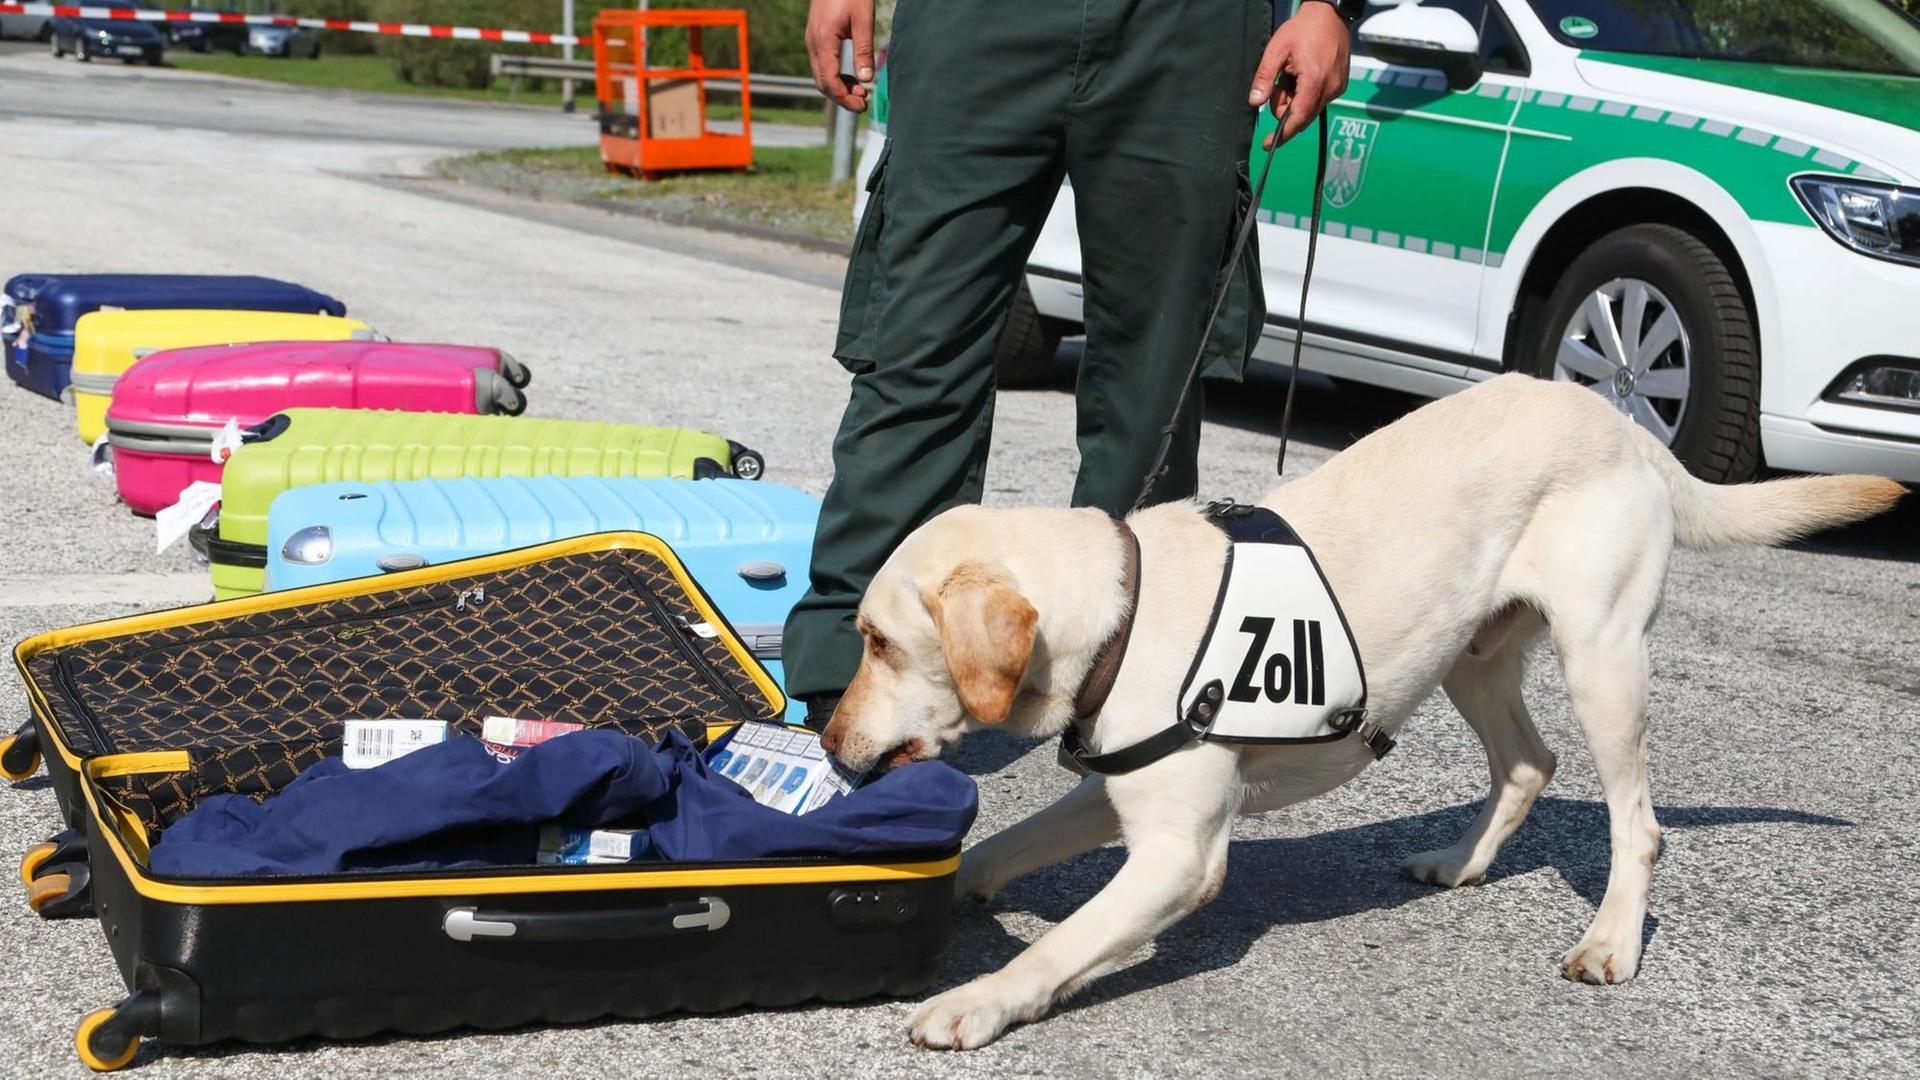 Ein heller Labrador schnüffelt an einem aufgeklappten Koffer mit Kleidung. Auf seinem Geschirr steht "Zoll".